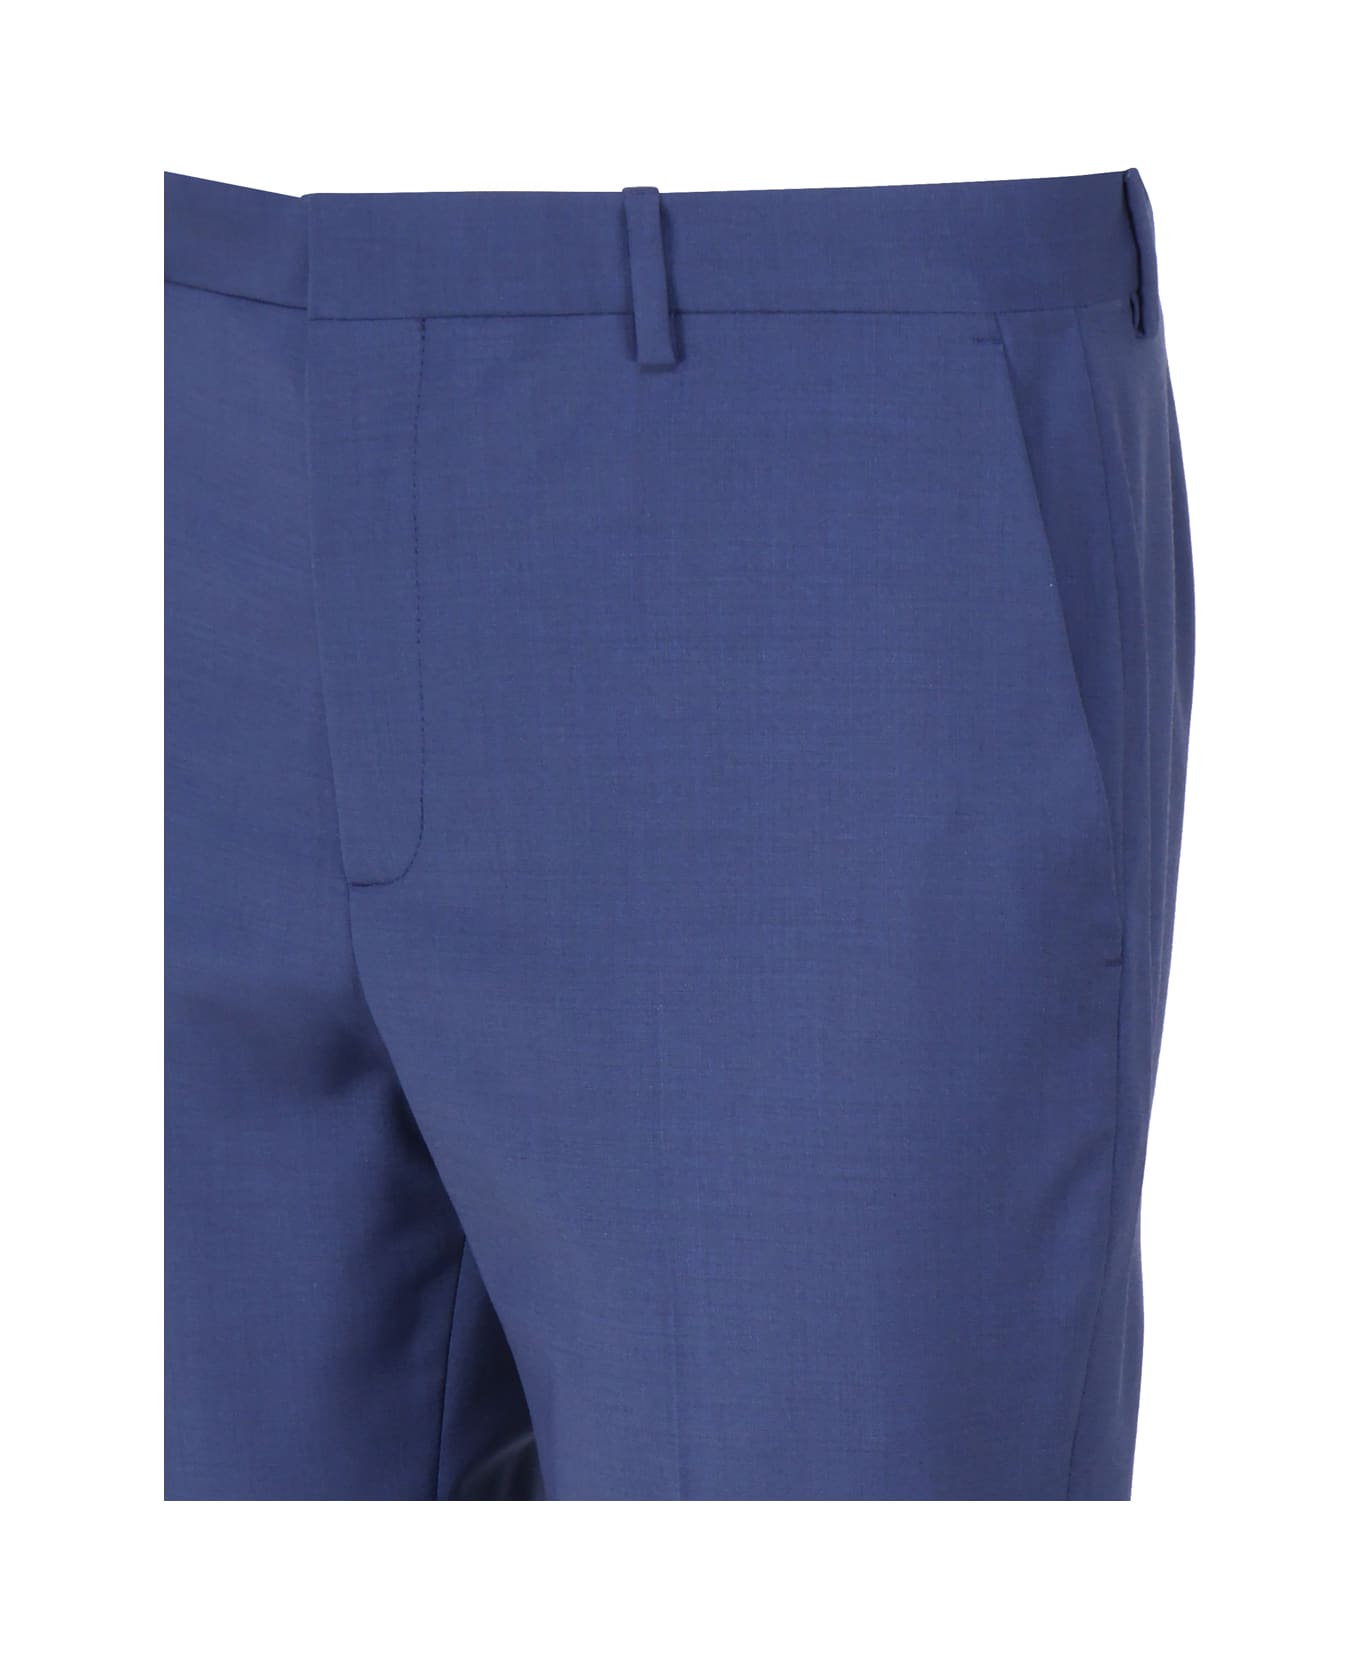 Calvin Klein Elegant Wool Blended Trousers - Slate blue